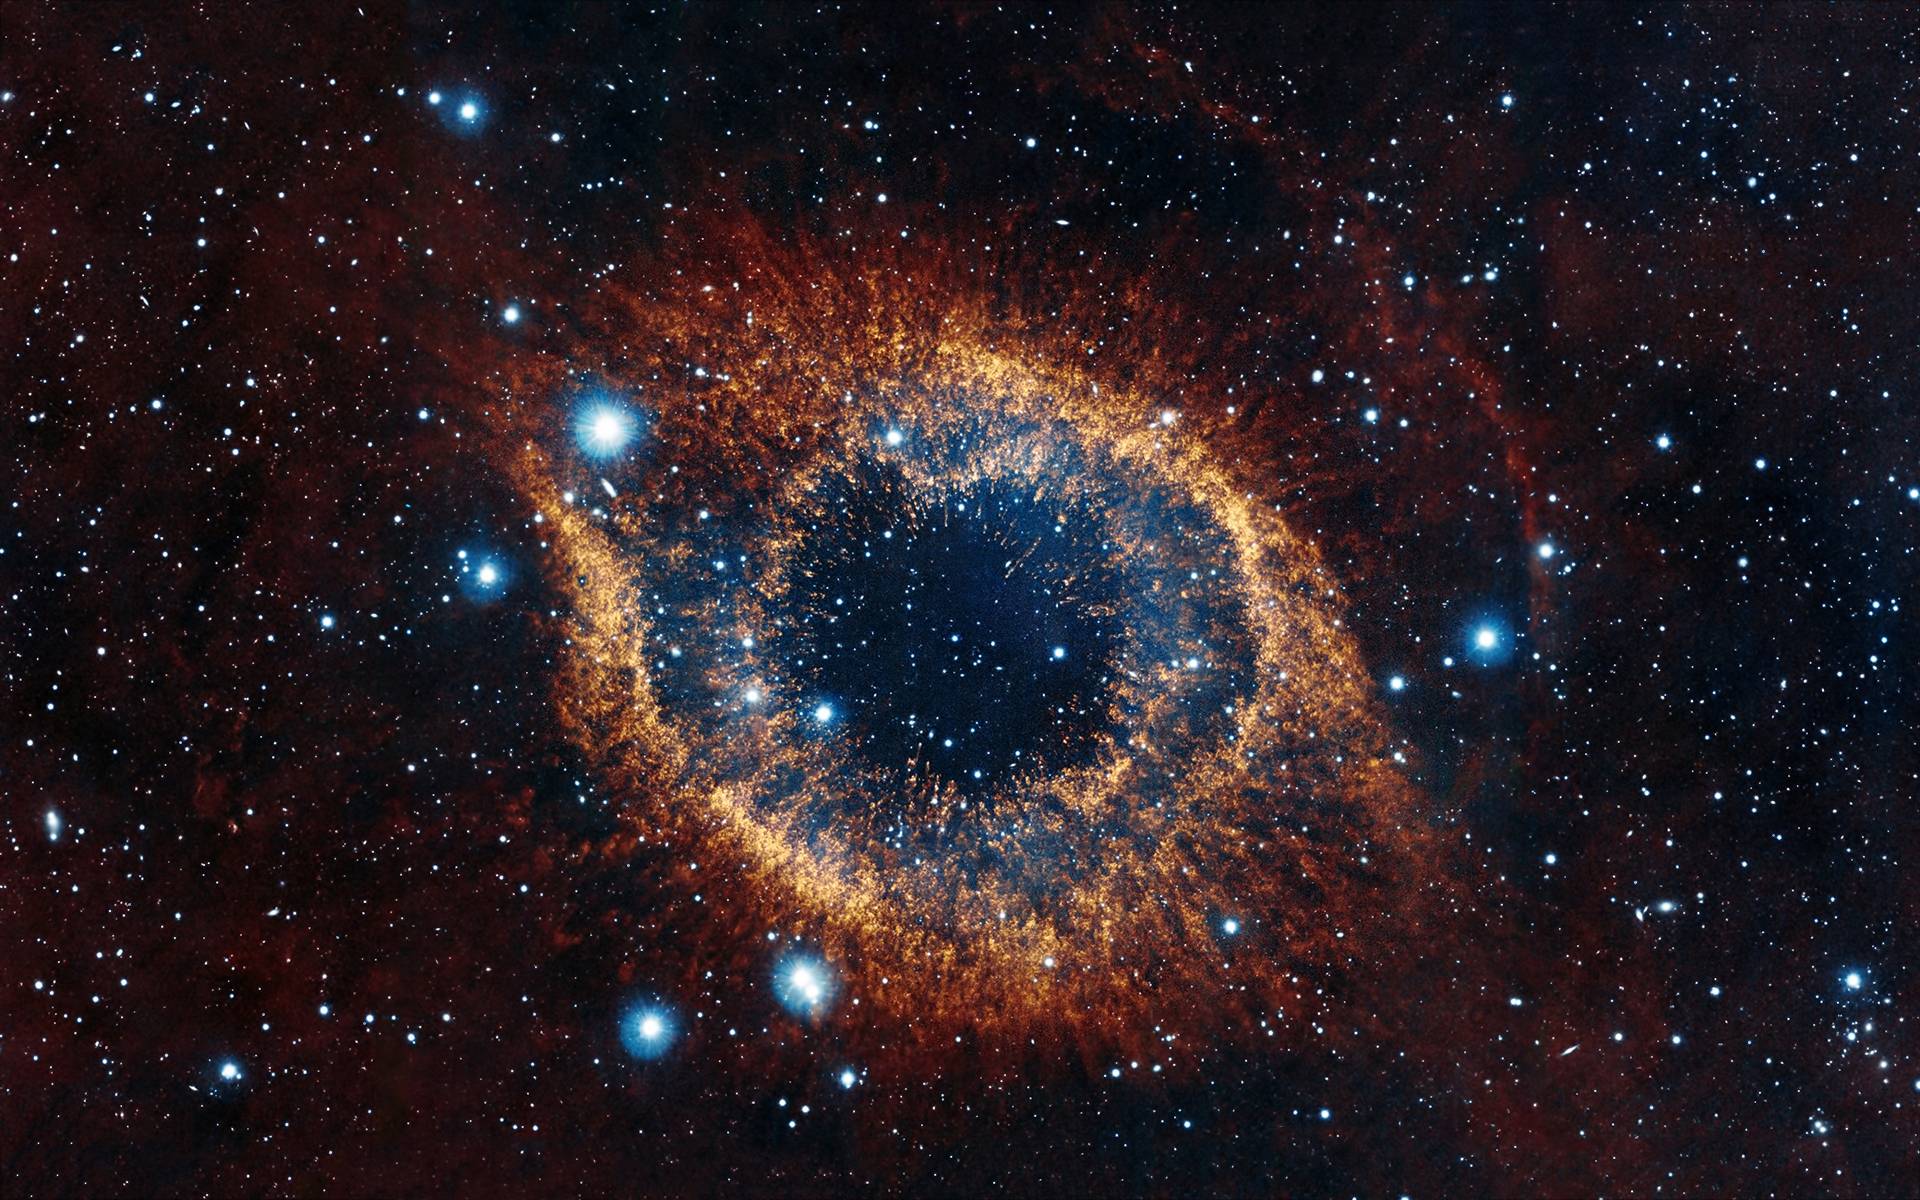 Eye of God Nebula